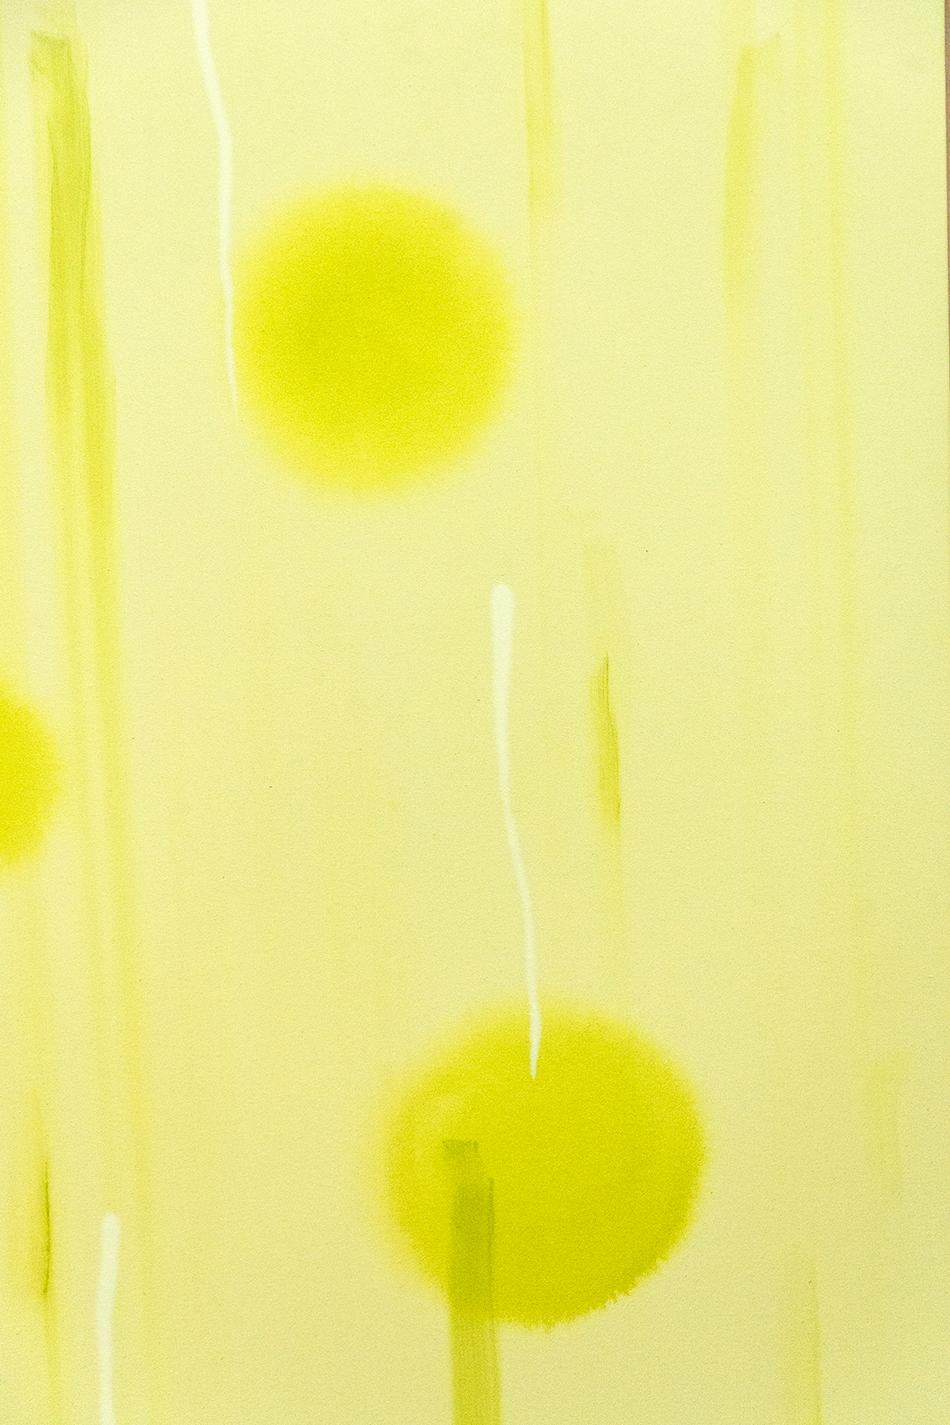 Vivre choses vivantes - grand, brillant, coloré, jaune, abstraction, acrylique sur toile - Jaune Abstract Painting par Milly Ristvedt